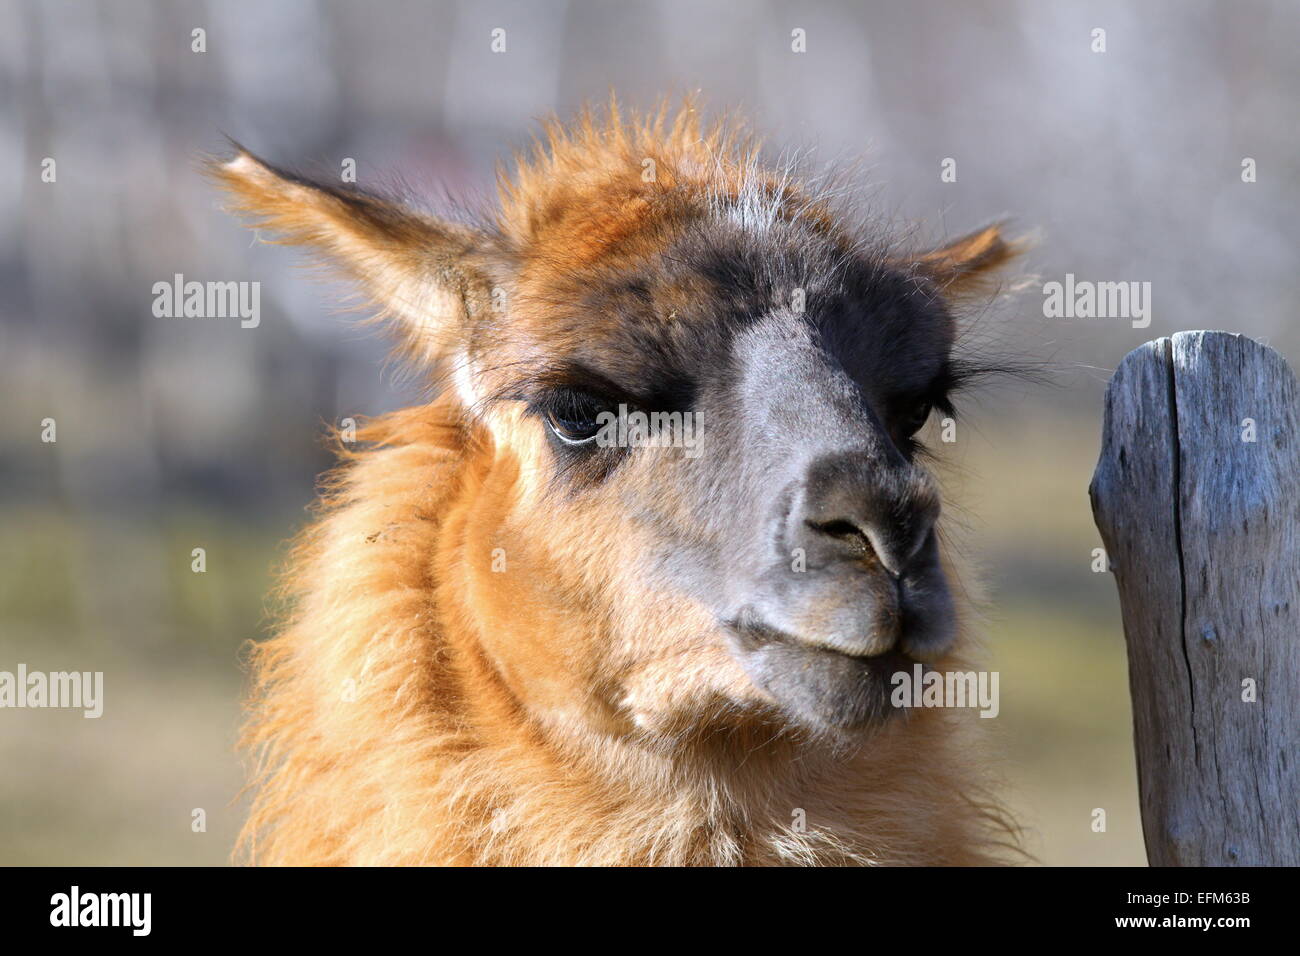 Portrait de lama cracheur, debout près de la barrière en bois Banque D'Images